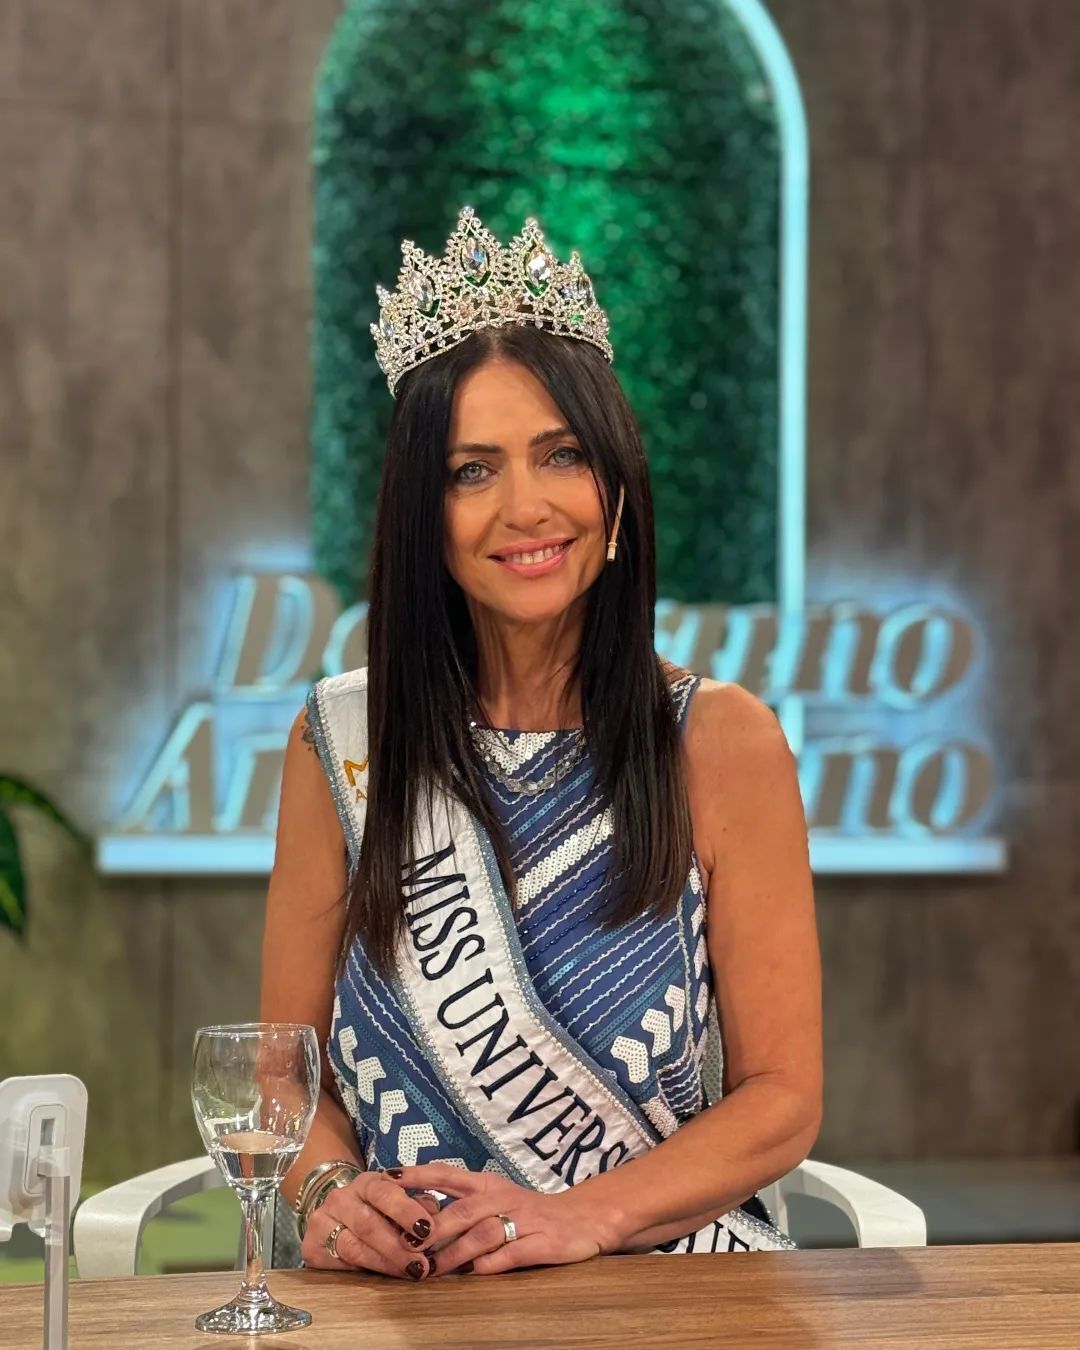 "Міс Всесвіт Буенос-Айрес" Алехандра Родрігес, яка в 60 років виглядає максимум на 40, розкрила свій секрет успіху і показала фото в купальнику